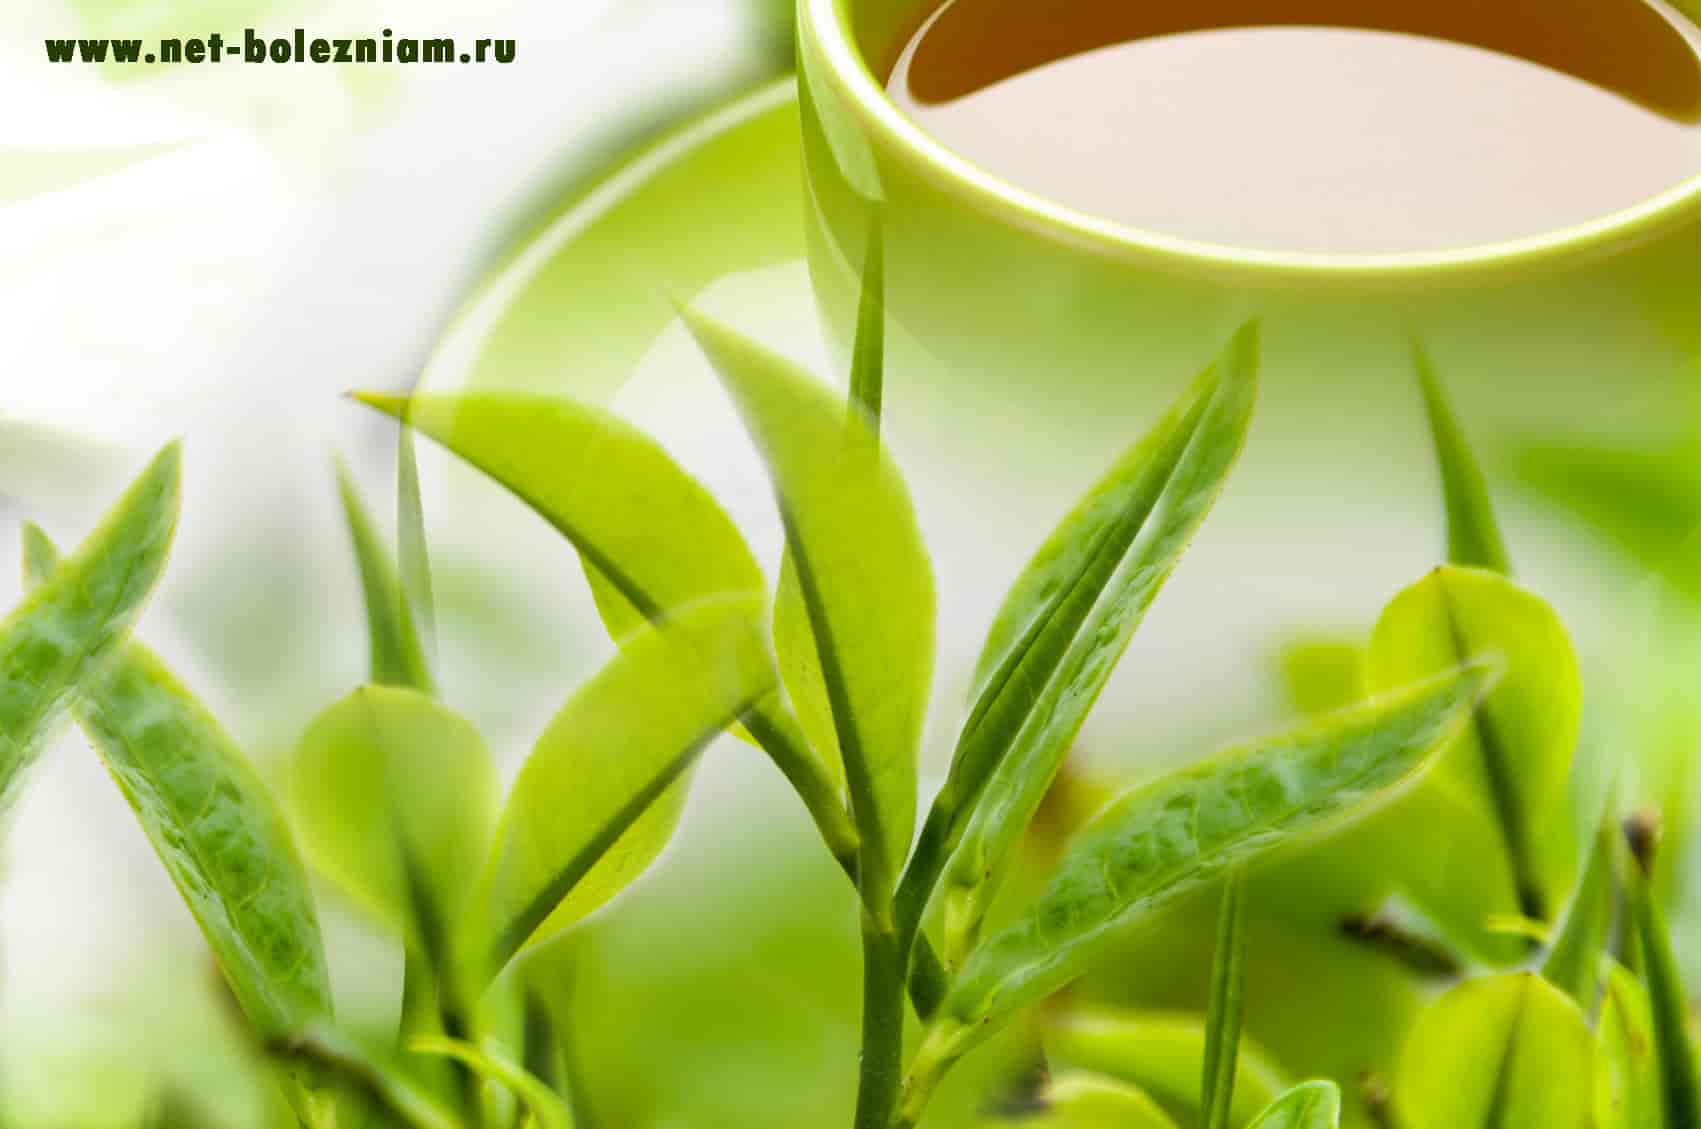 Зелёный чай - прекрасный напиток для похудения